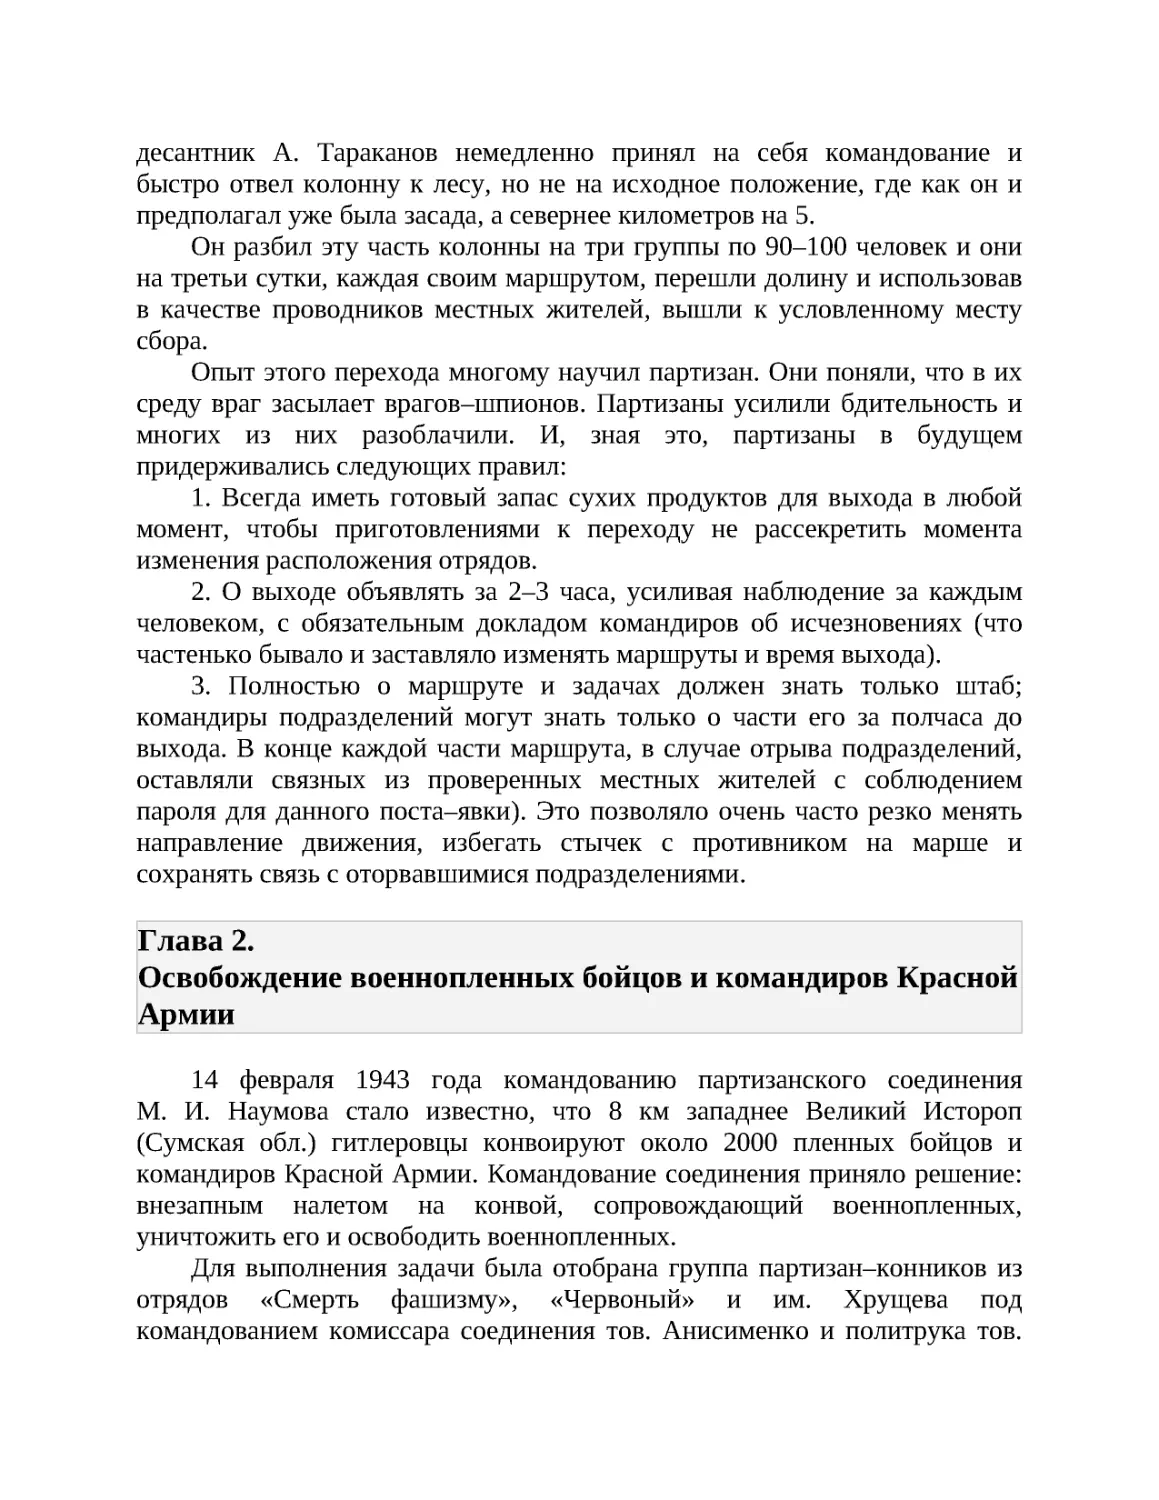 Глава 2. Освобождение военнопленных бойцов и командиров Красной Армии